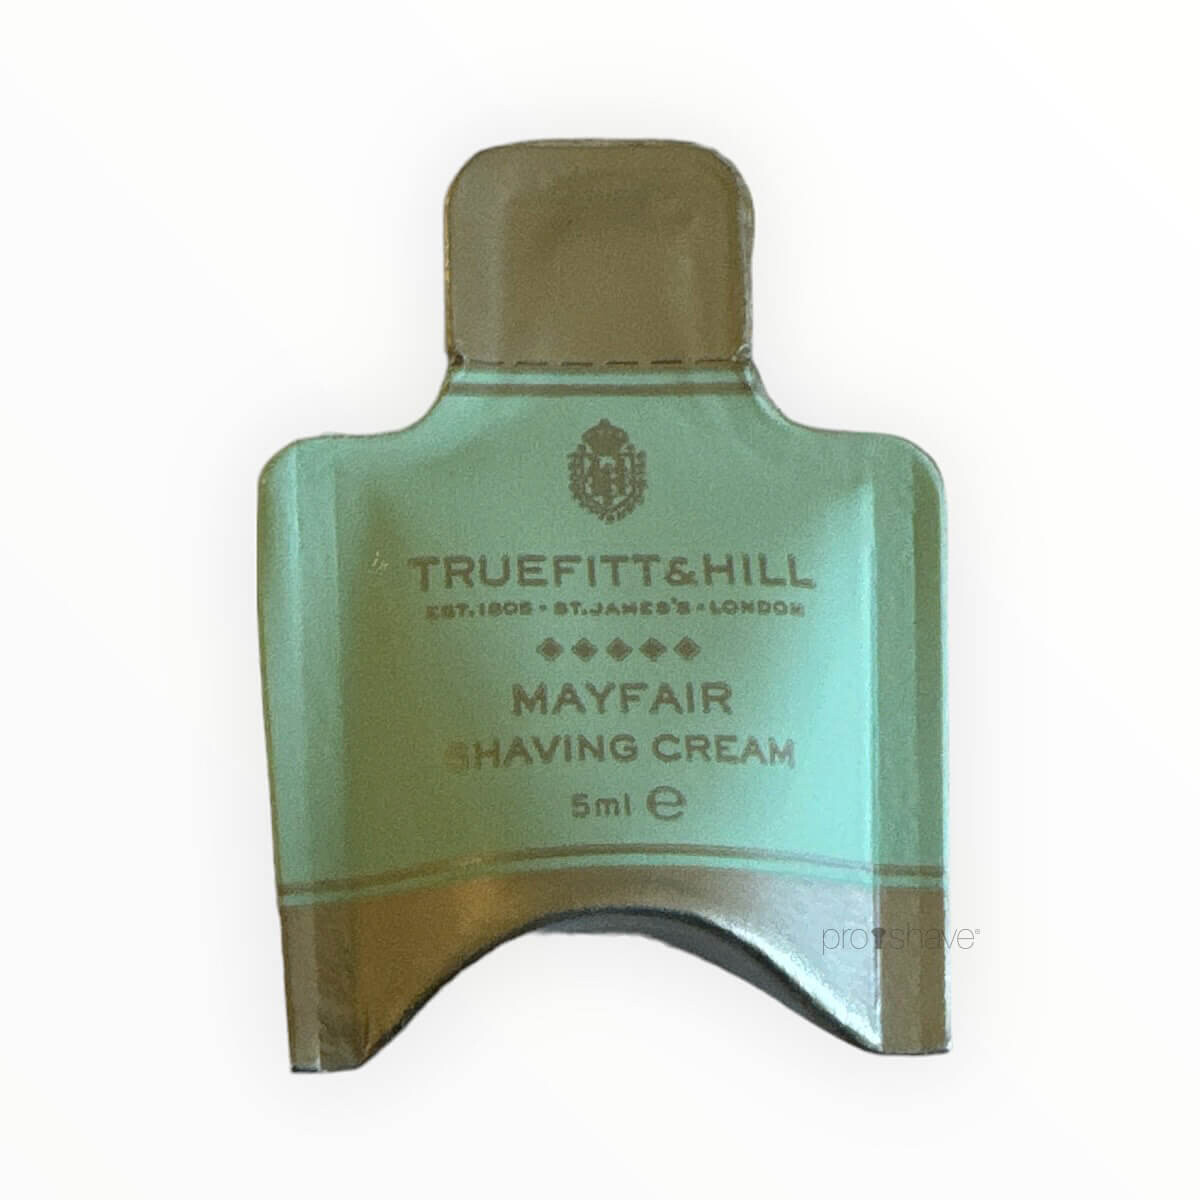 7: Truefitt & Hill Mayfair Shaving Cream Sample Pack, 5 ml.